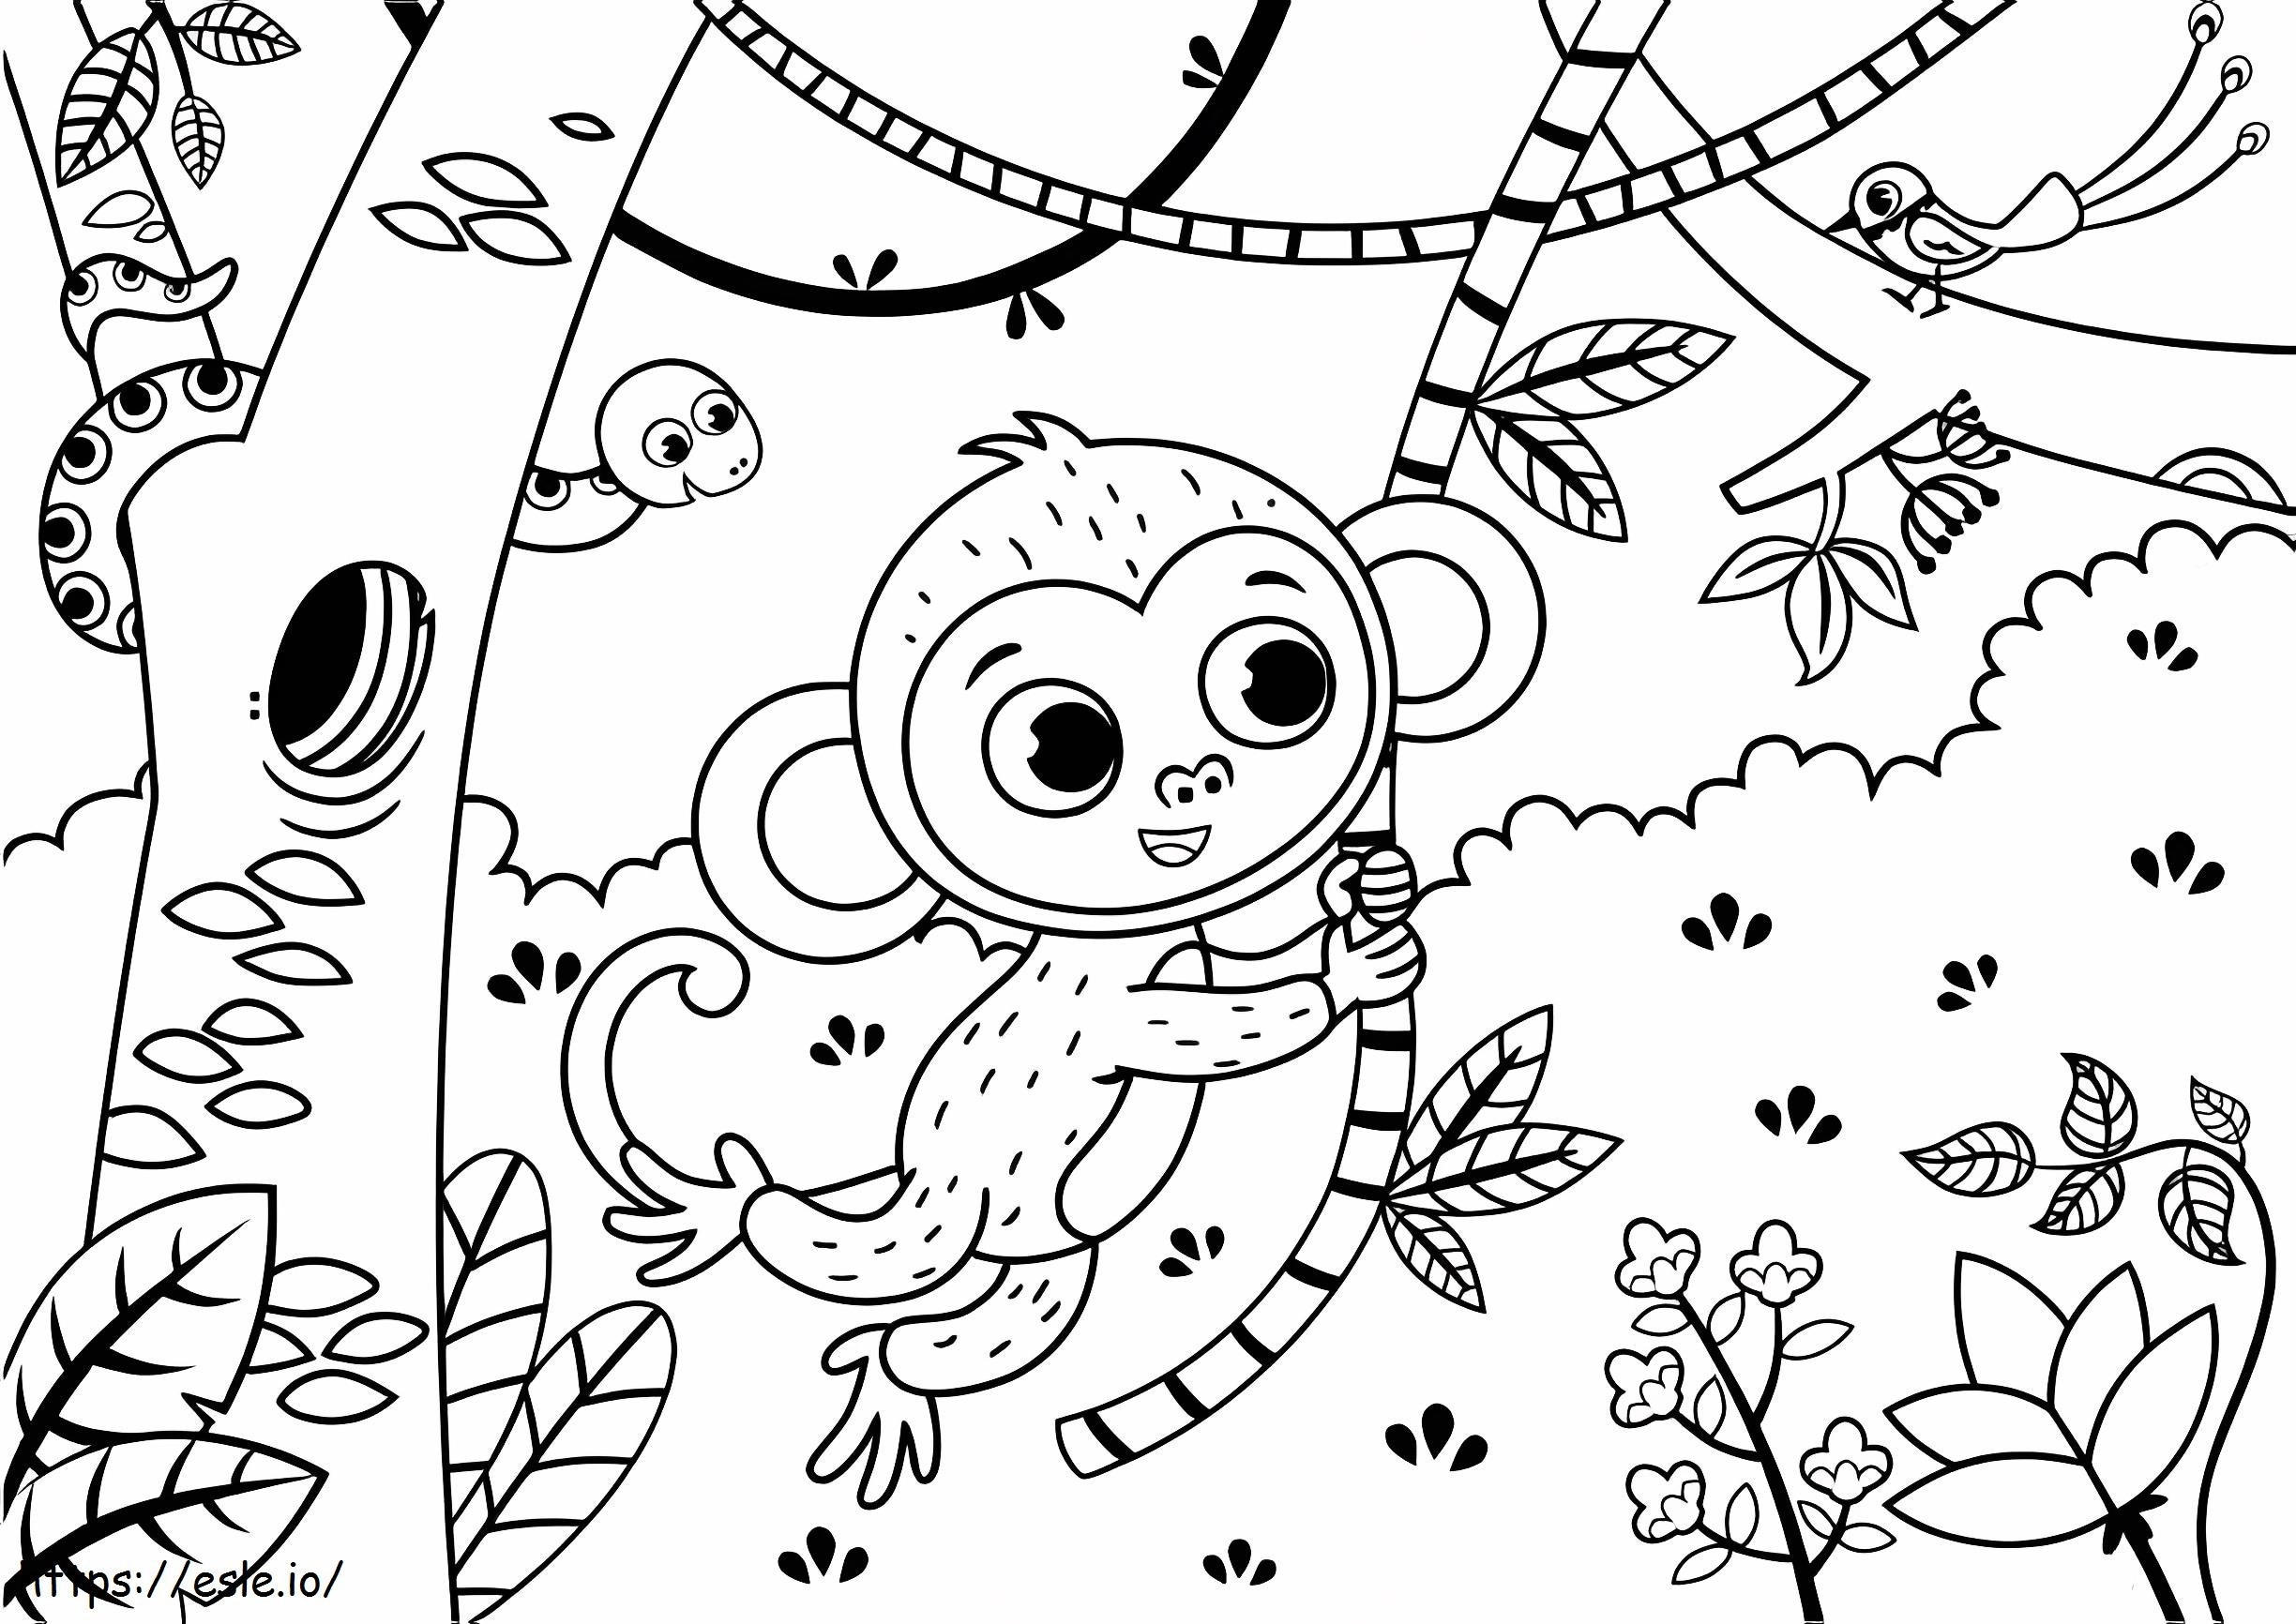 Scimmia sveglia che si arrampica sull'albero da colorare